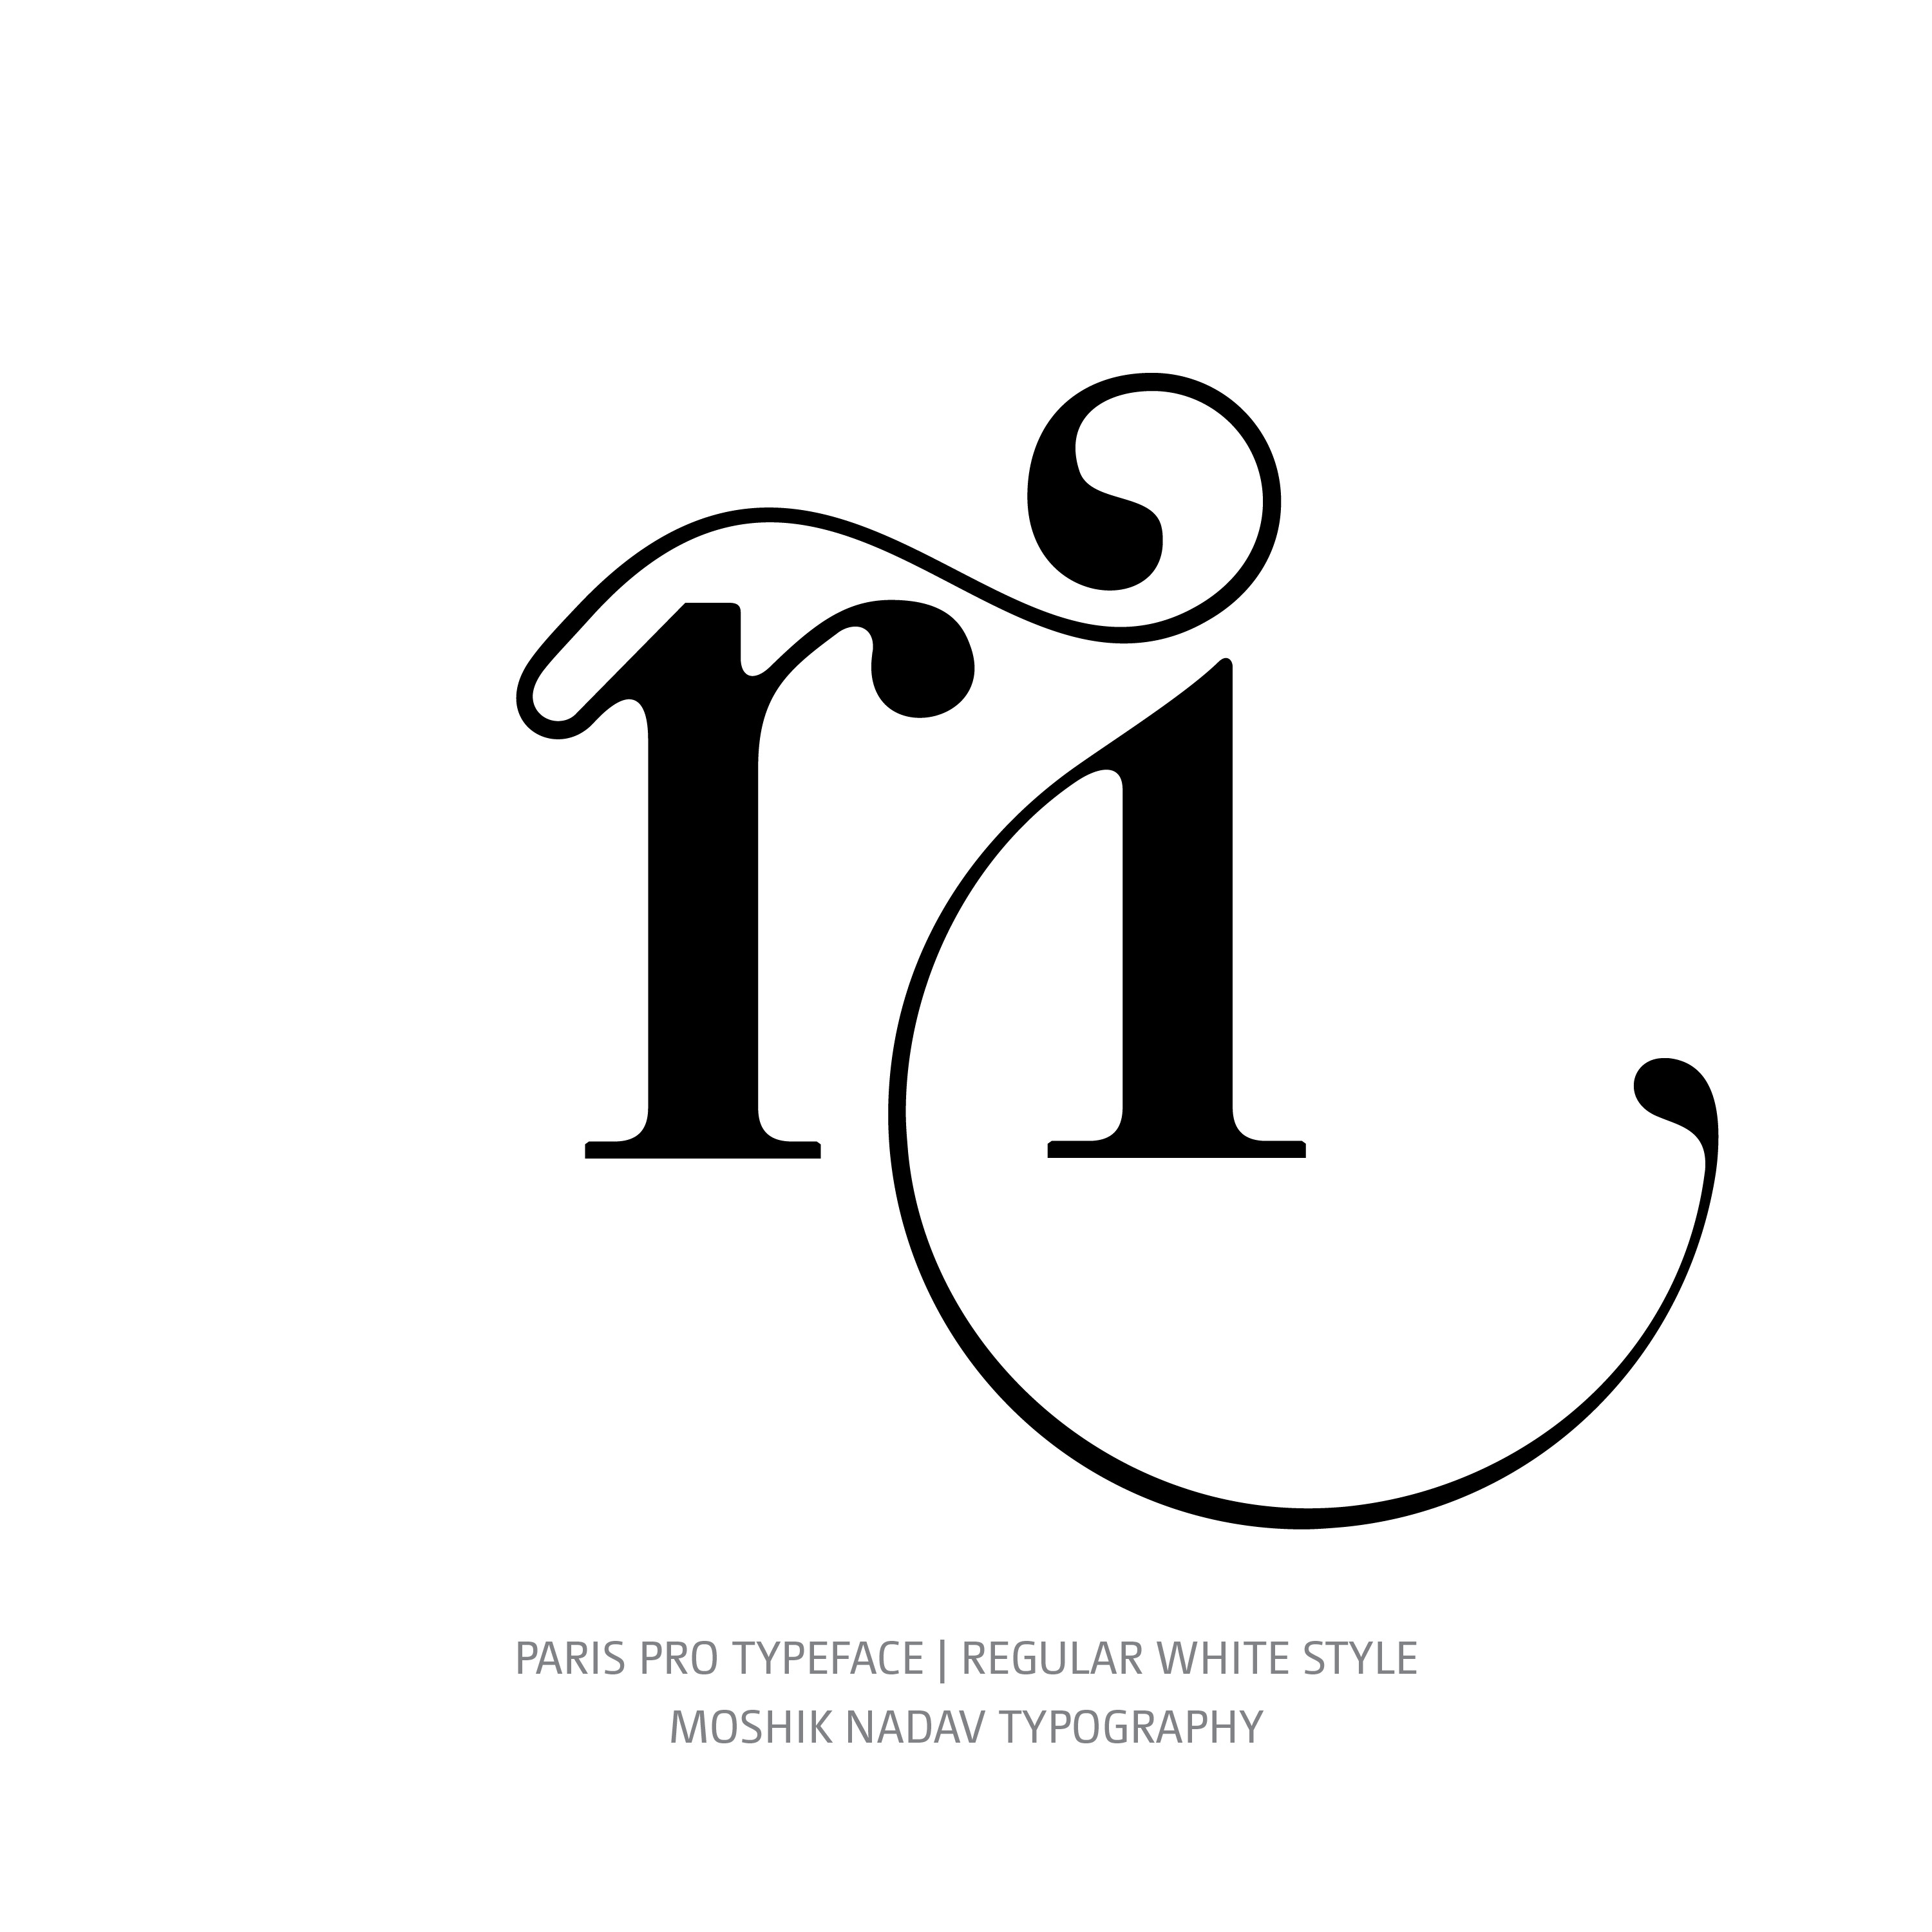 Paris Pro Typeface Regular White ri ligature